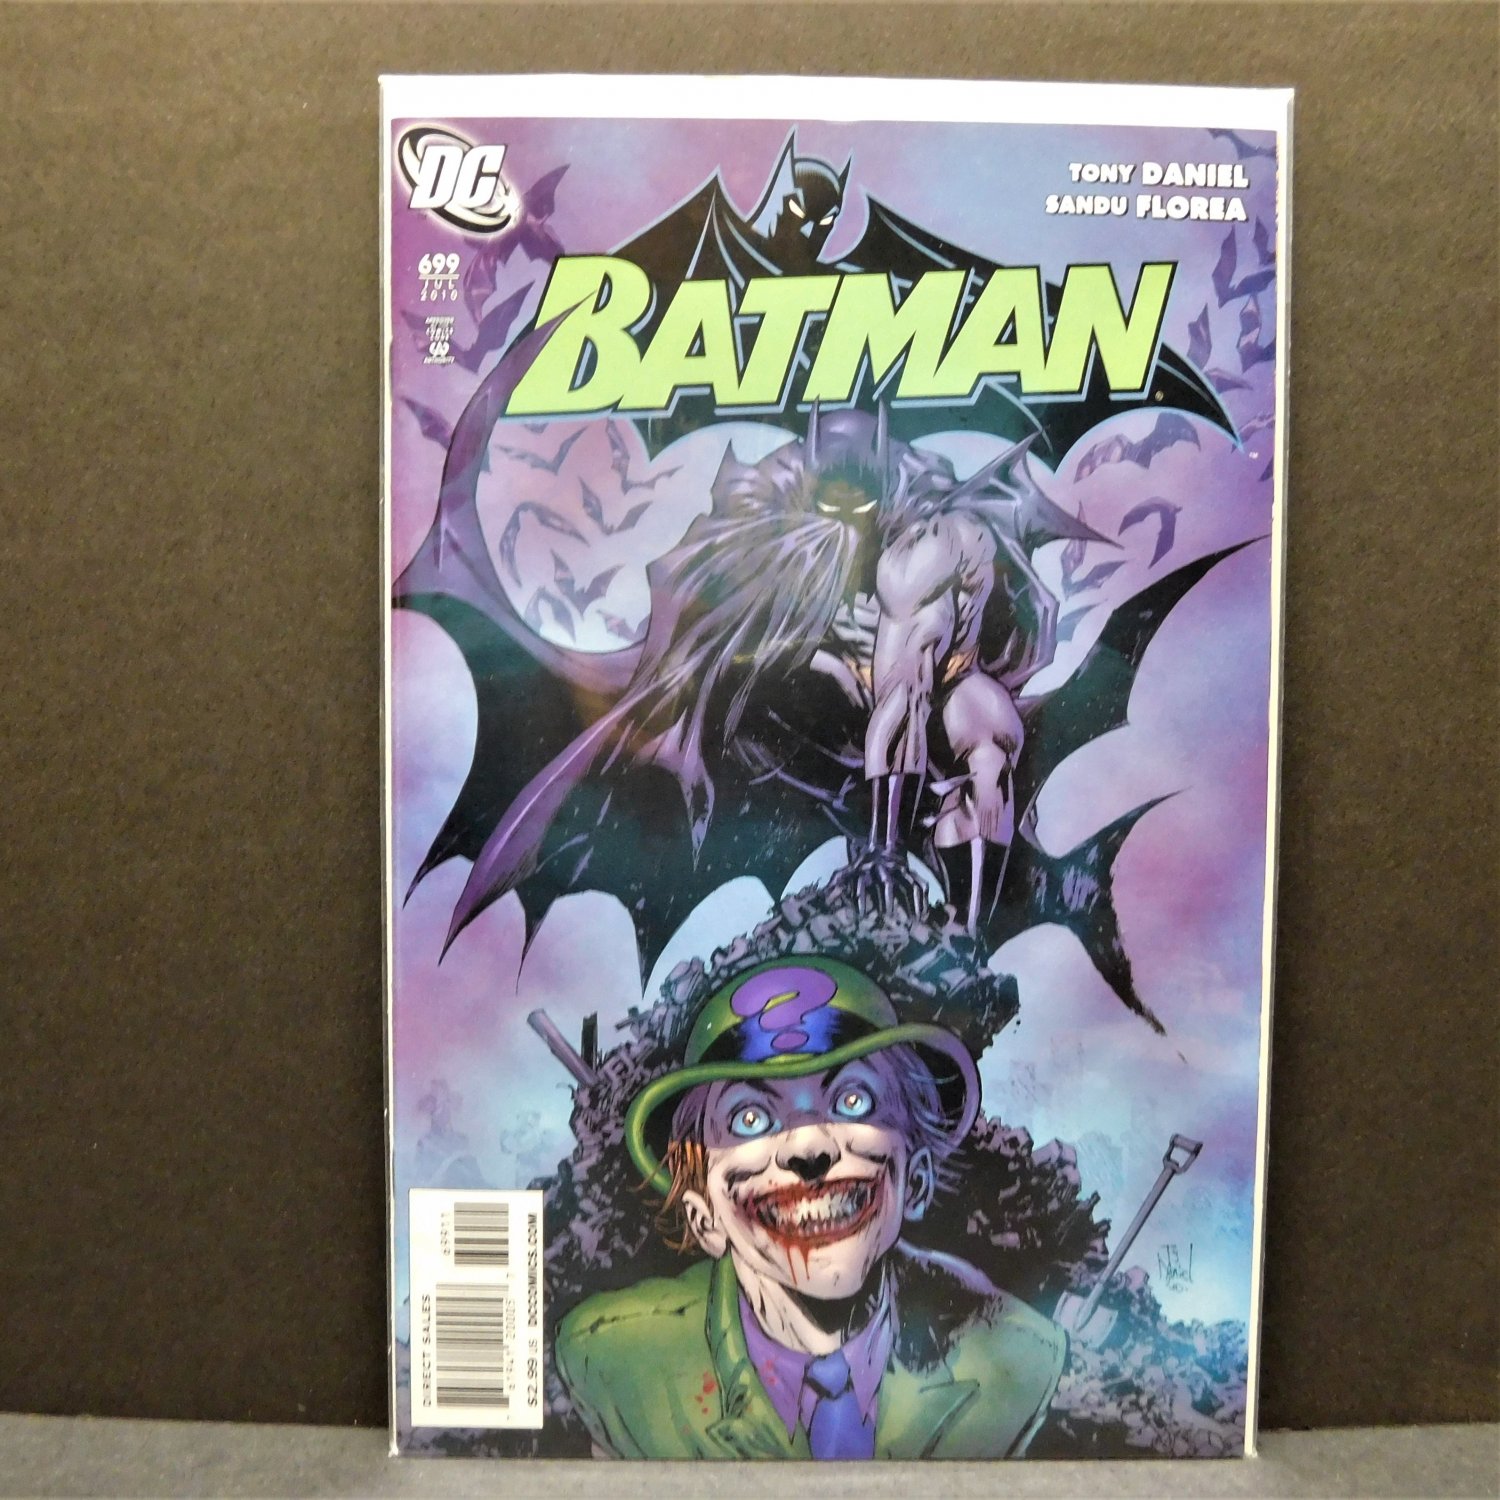 BATMAN #699 - DC Comics - Tony Daniel